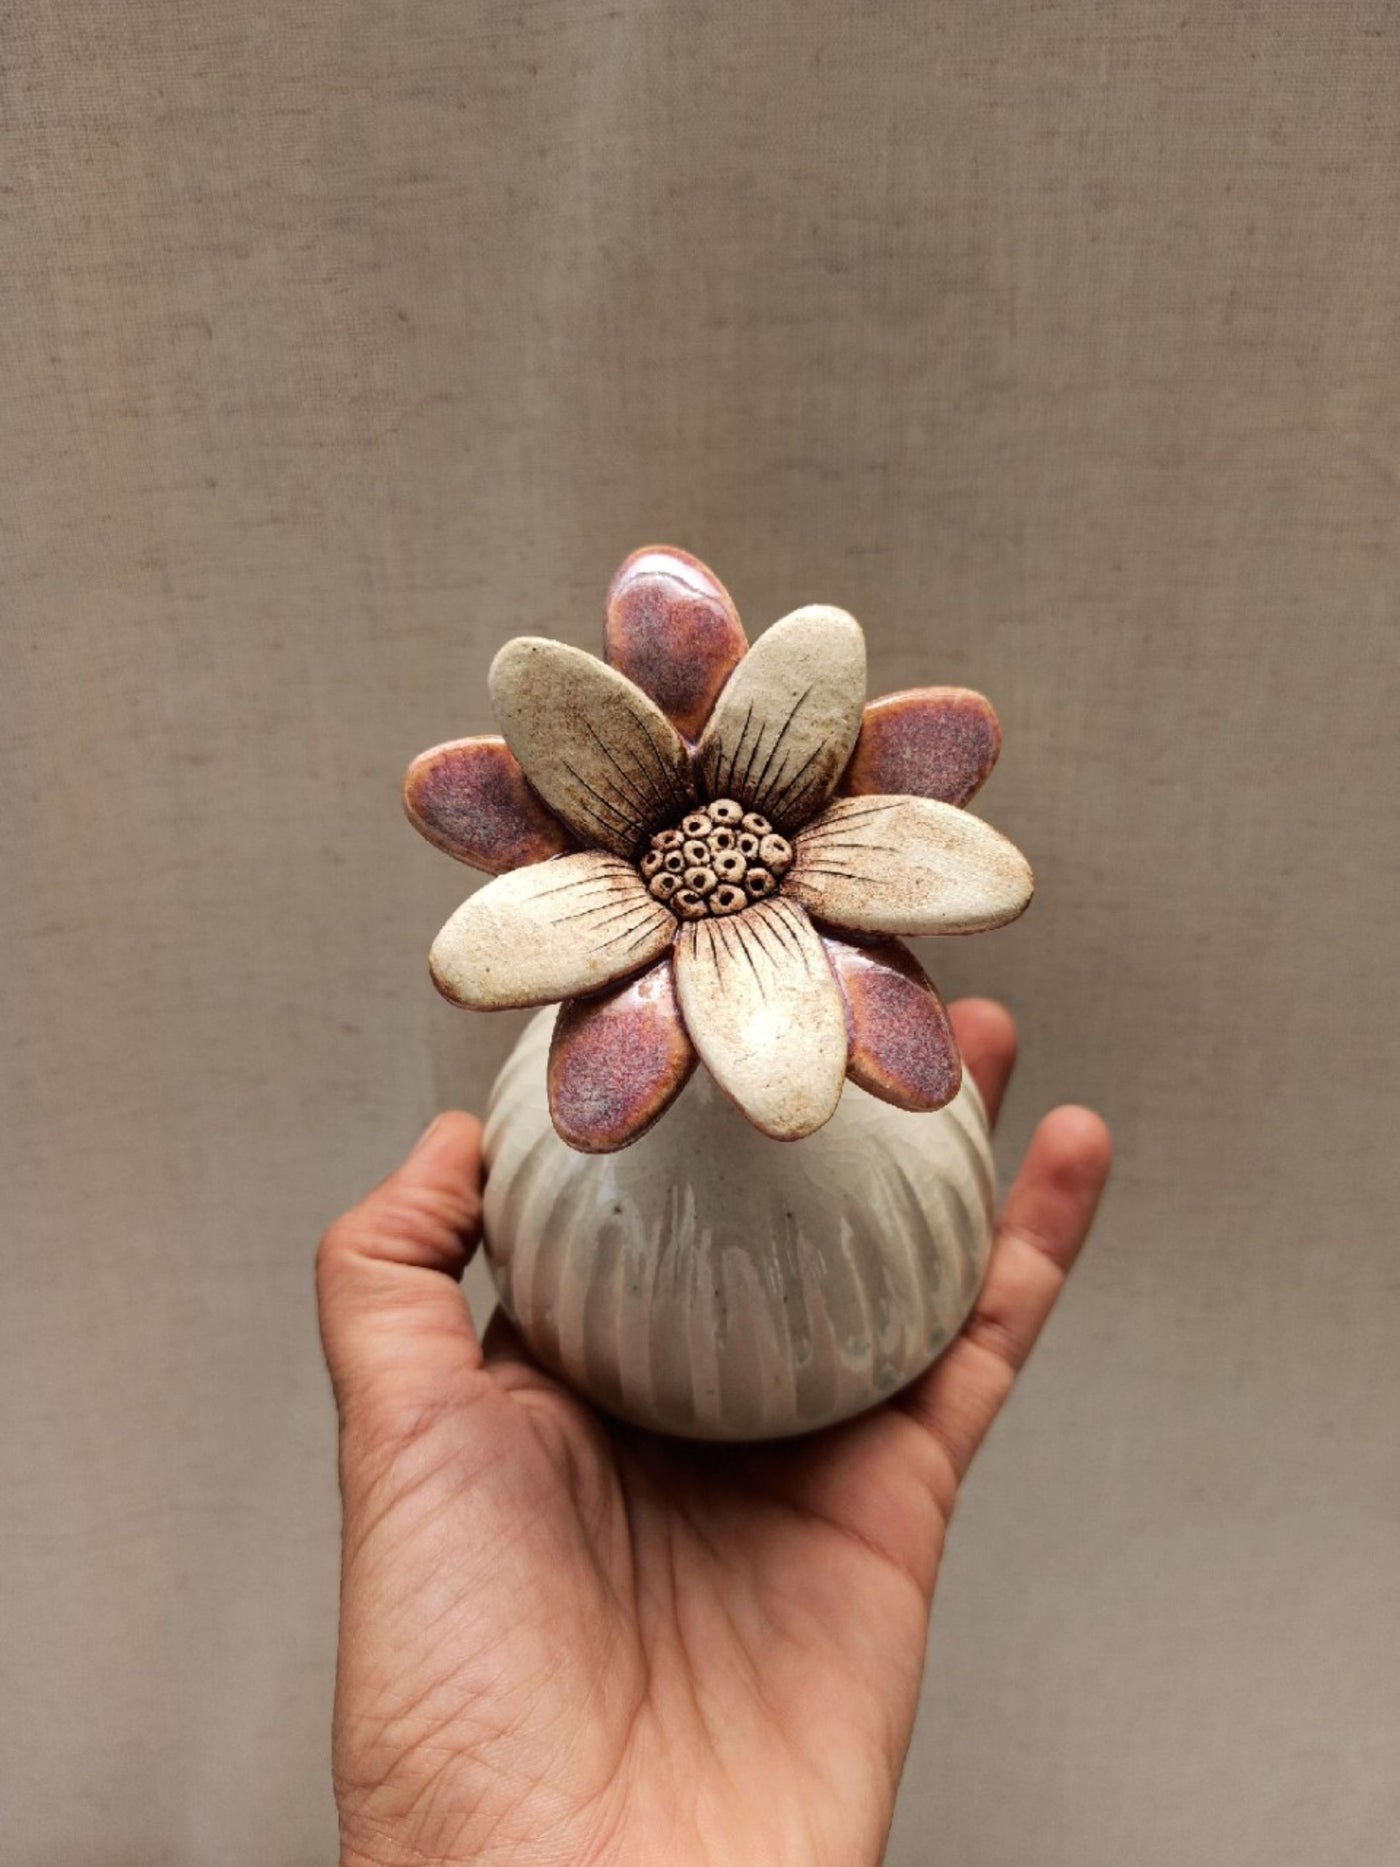 Table Decorative Object - Flower Bulbs